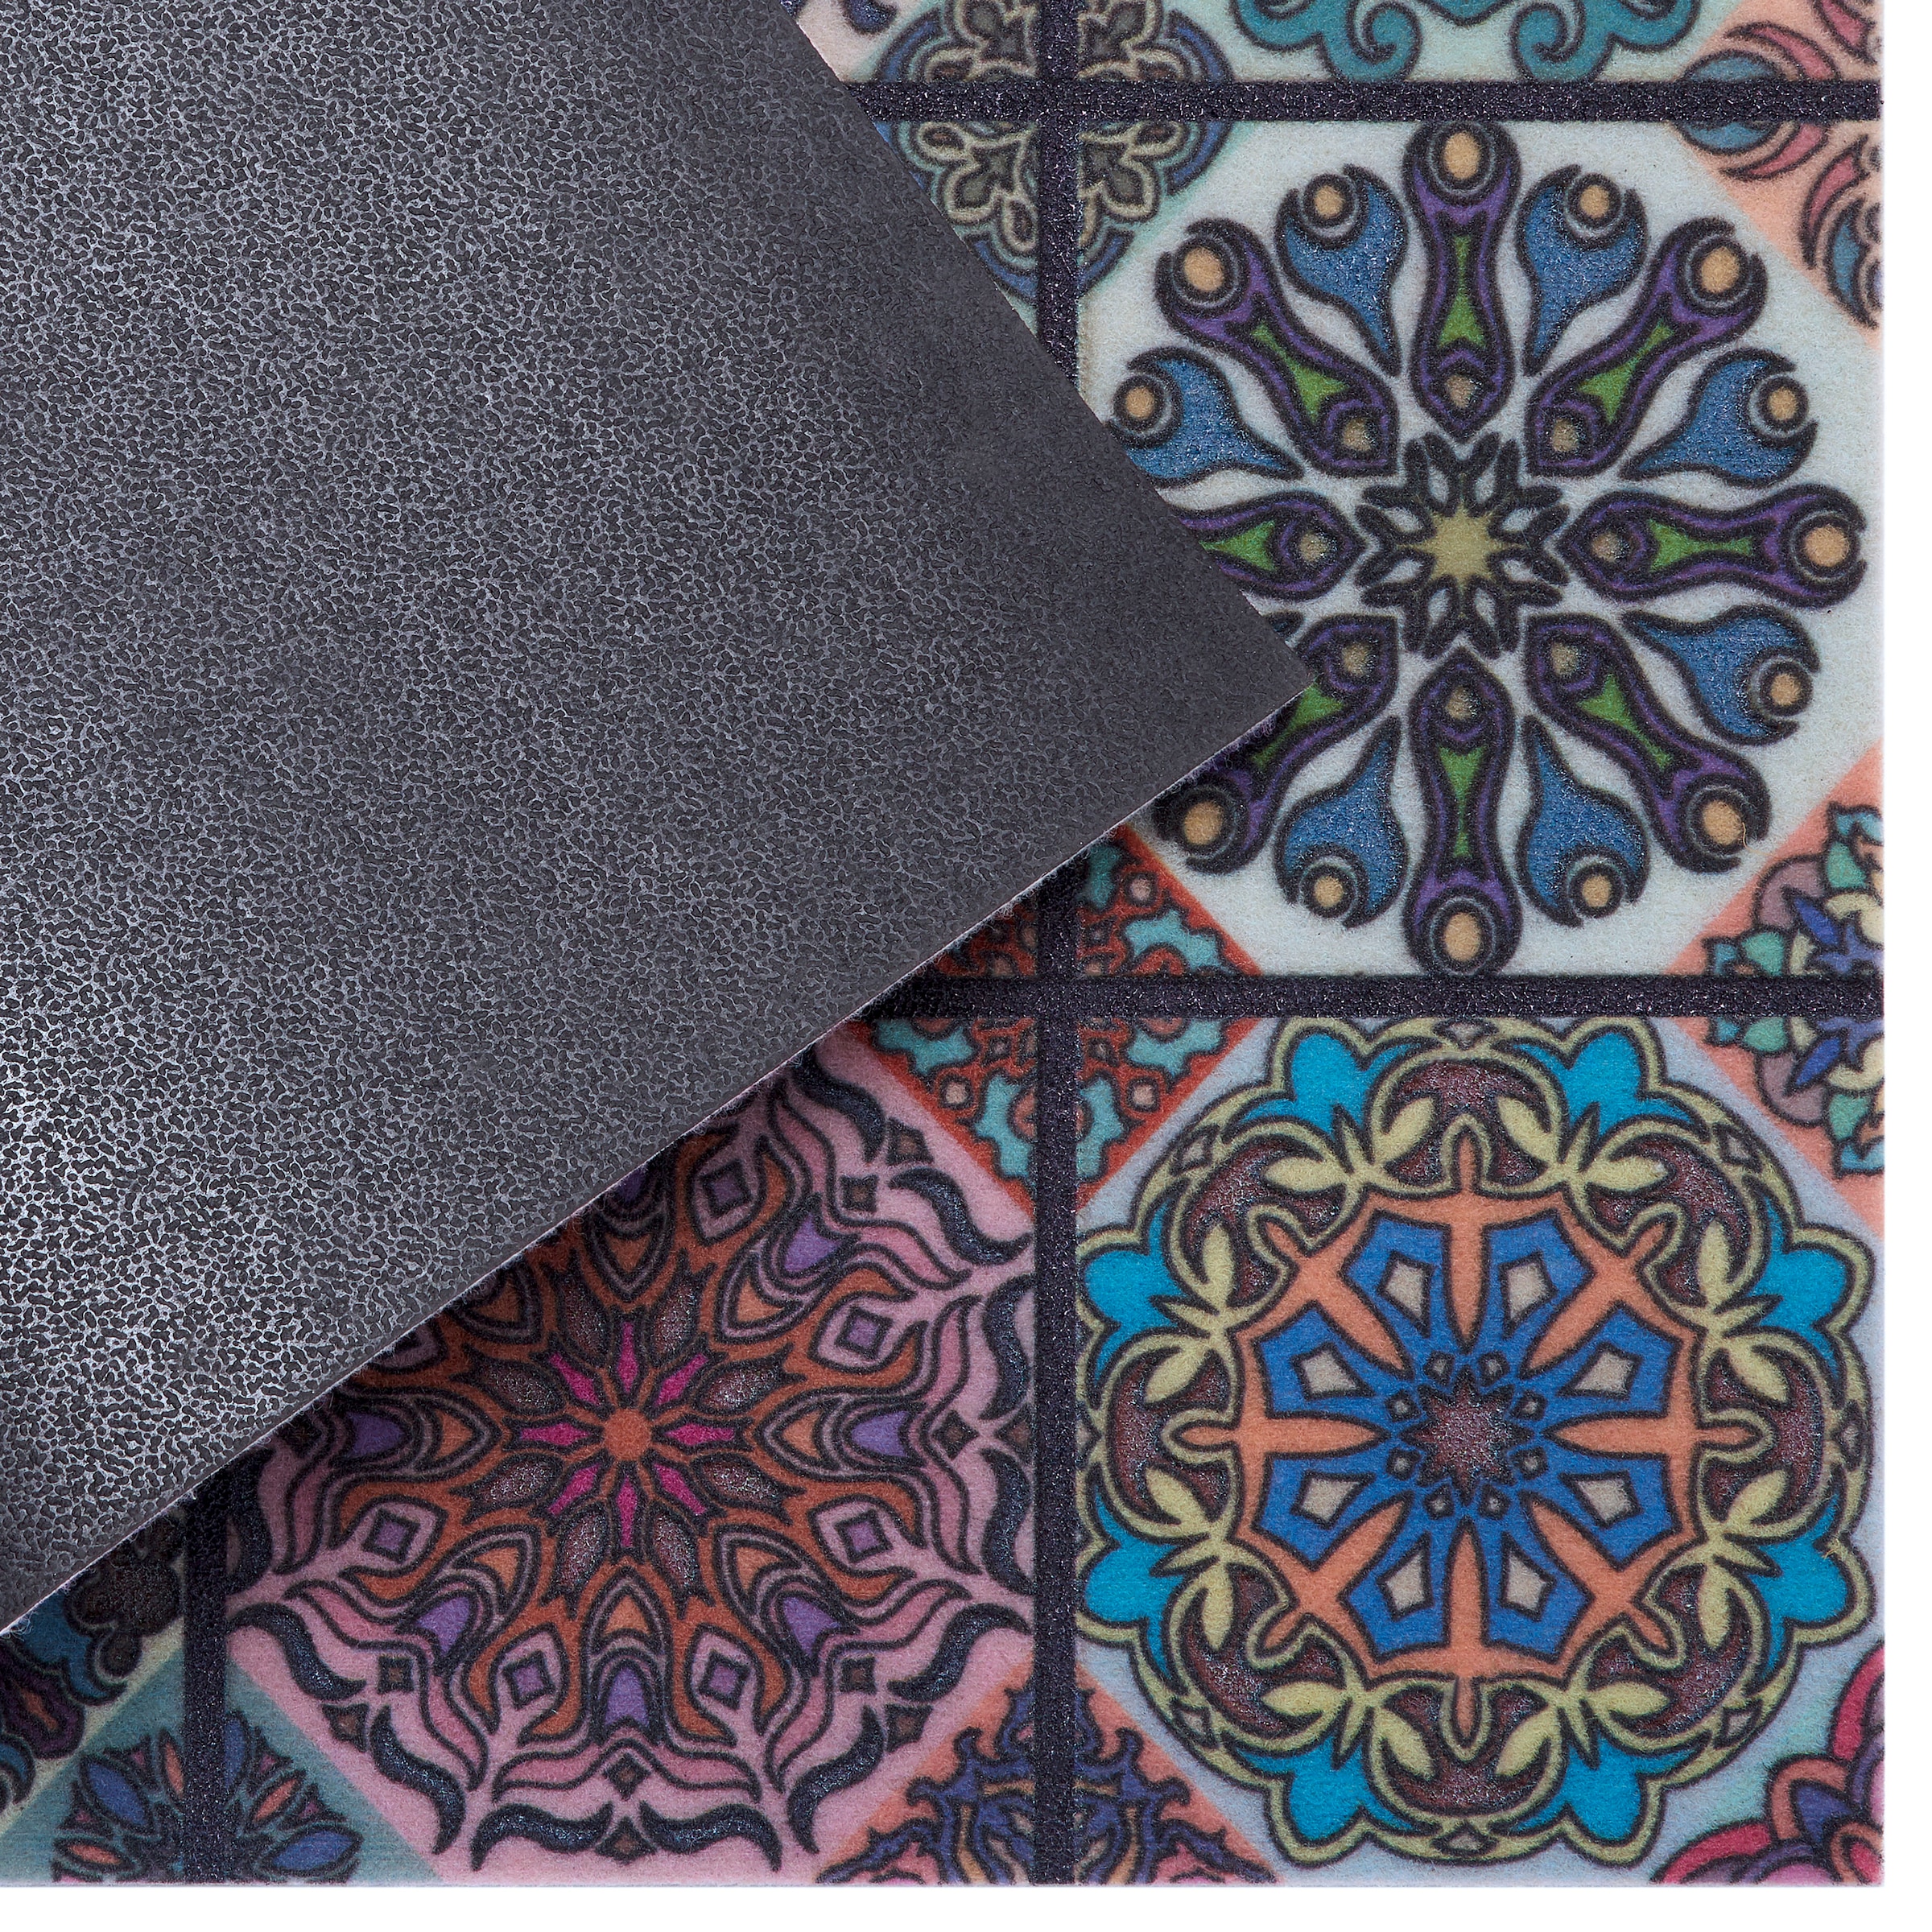 Home affaire Fußmatte »Mandala klein«, rechteckig, mit Spruch, Kachel-Design, Rutschfest, Kräftige Farben